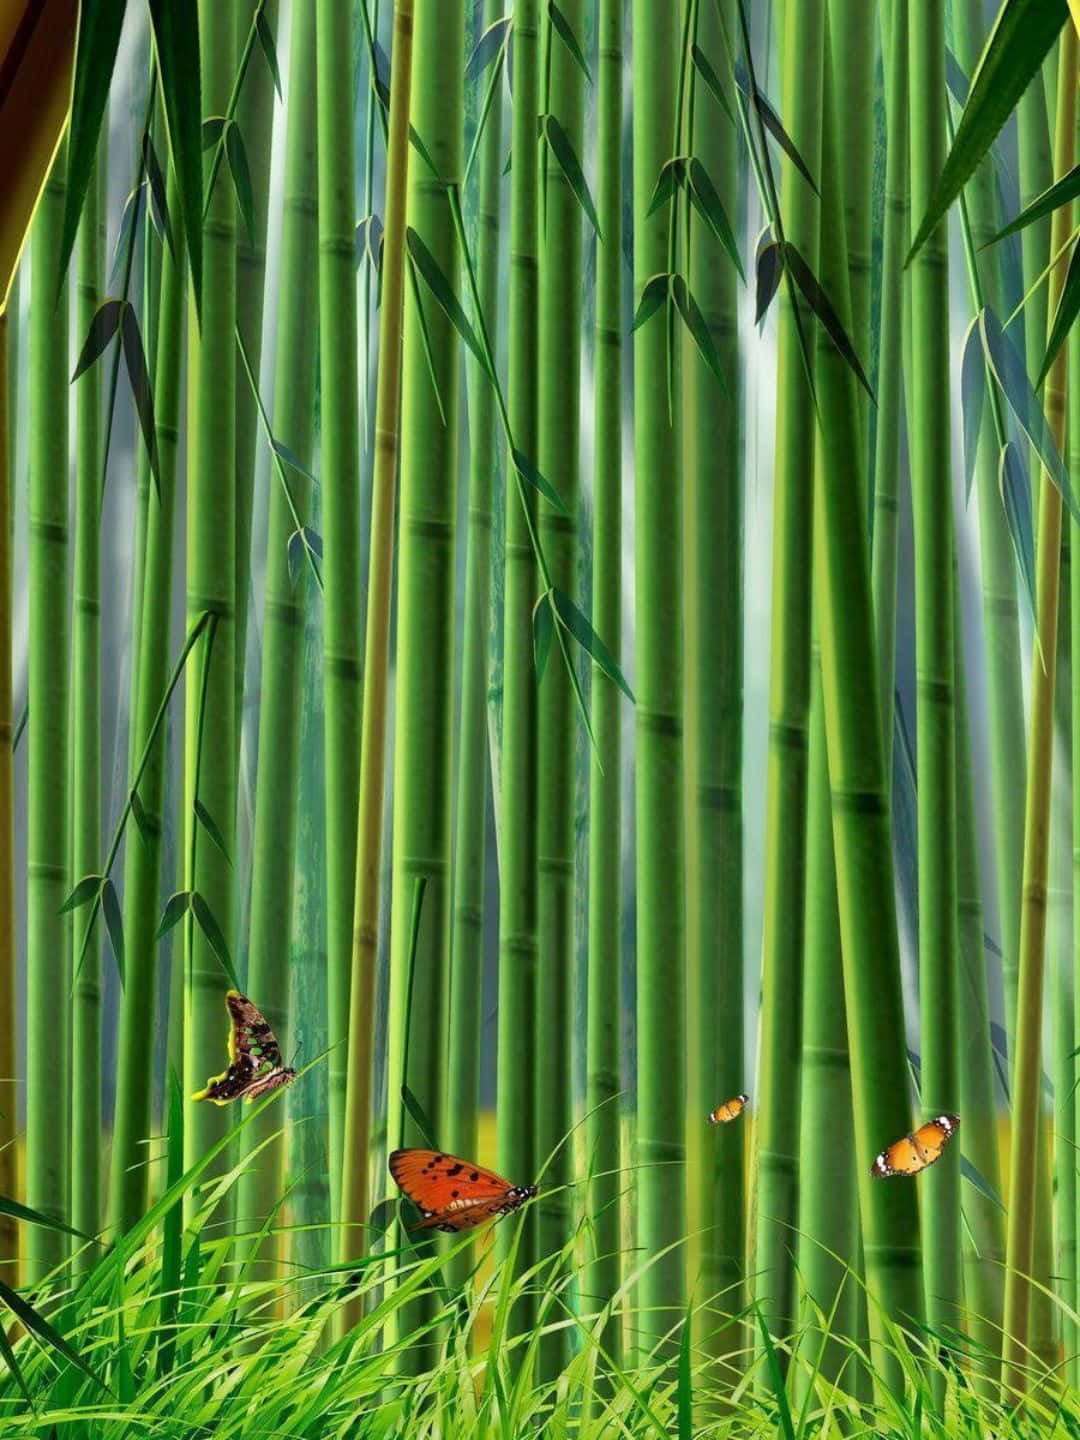 1440pbambu Bakgrundsfanartmålning Med Fjärilar